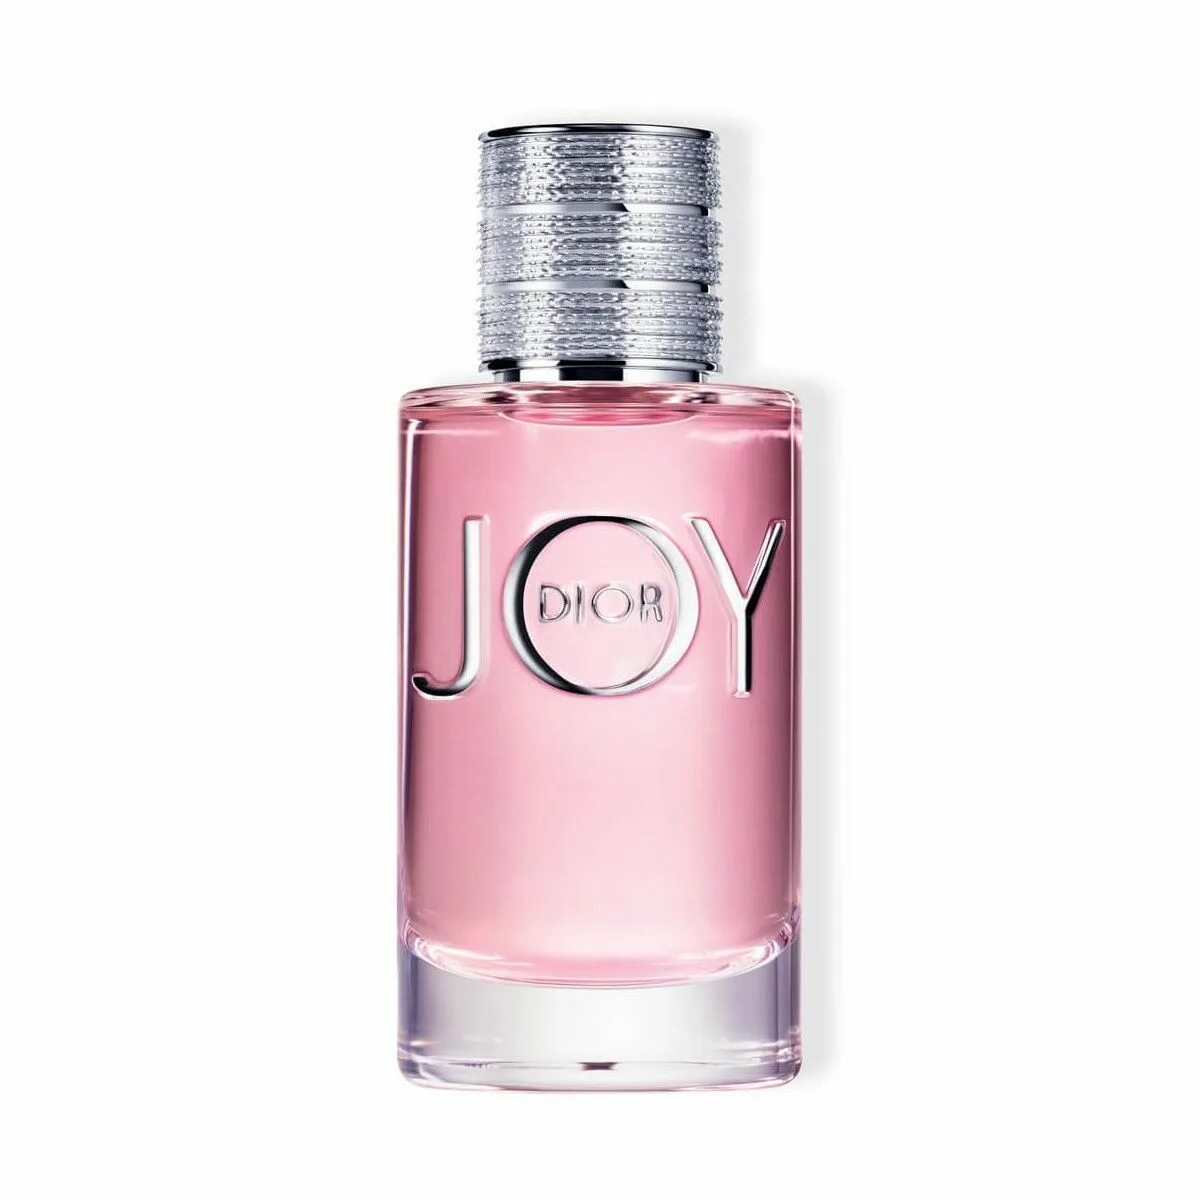 90 мл купить. Dior Joy 90ml. Joy by Dior Eau de Parfum. Joy (Christian Dior) 100мл. Духи диор Джой женские.